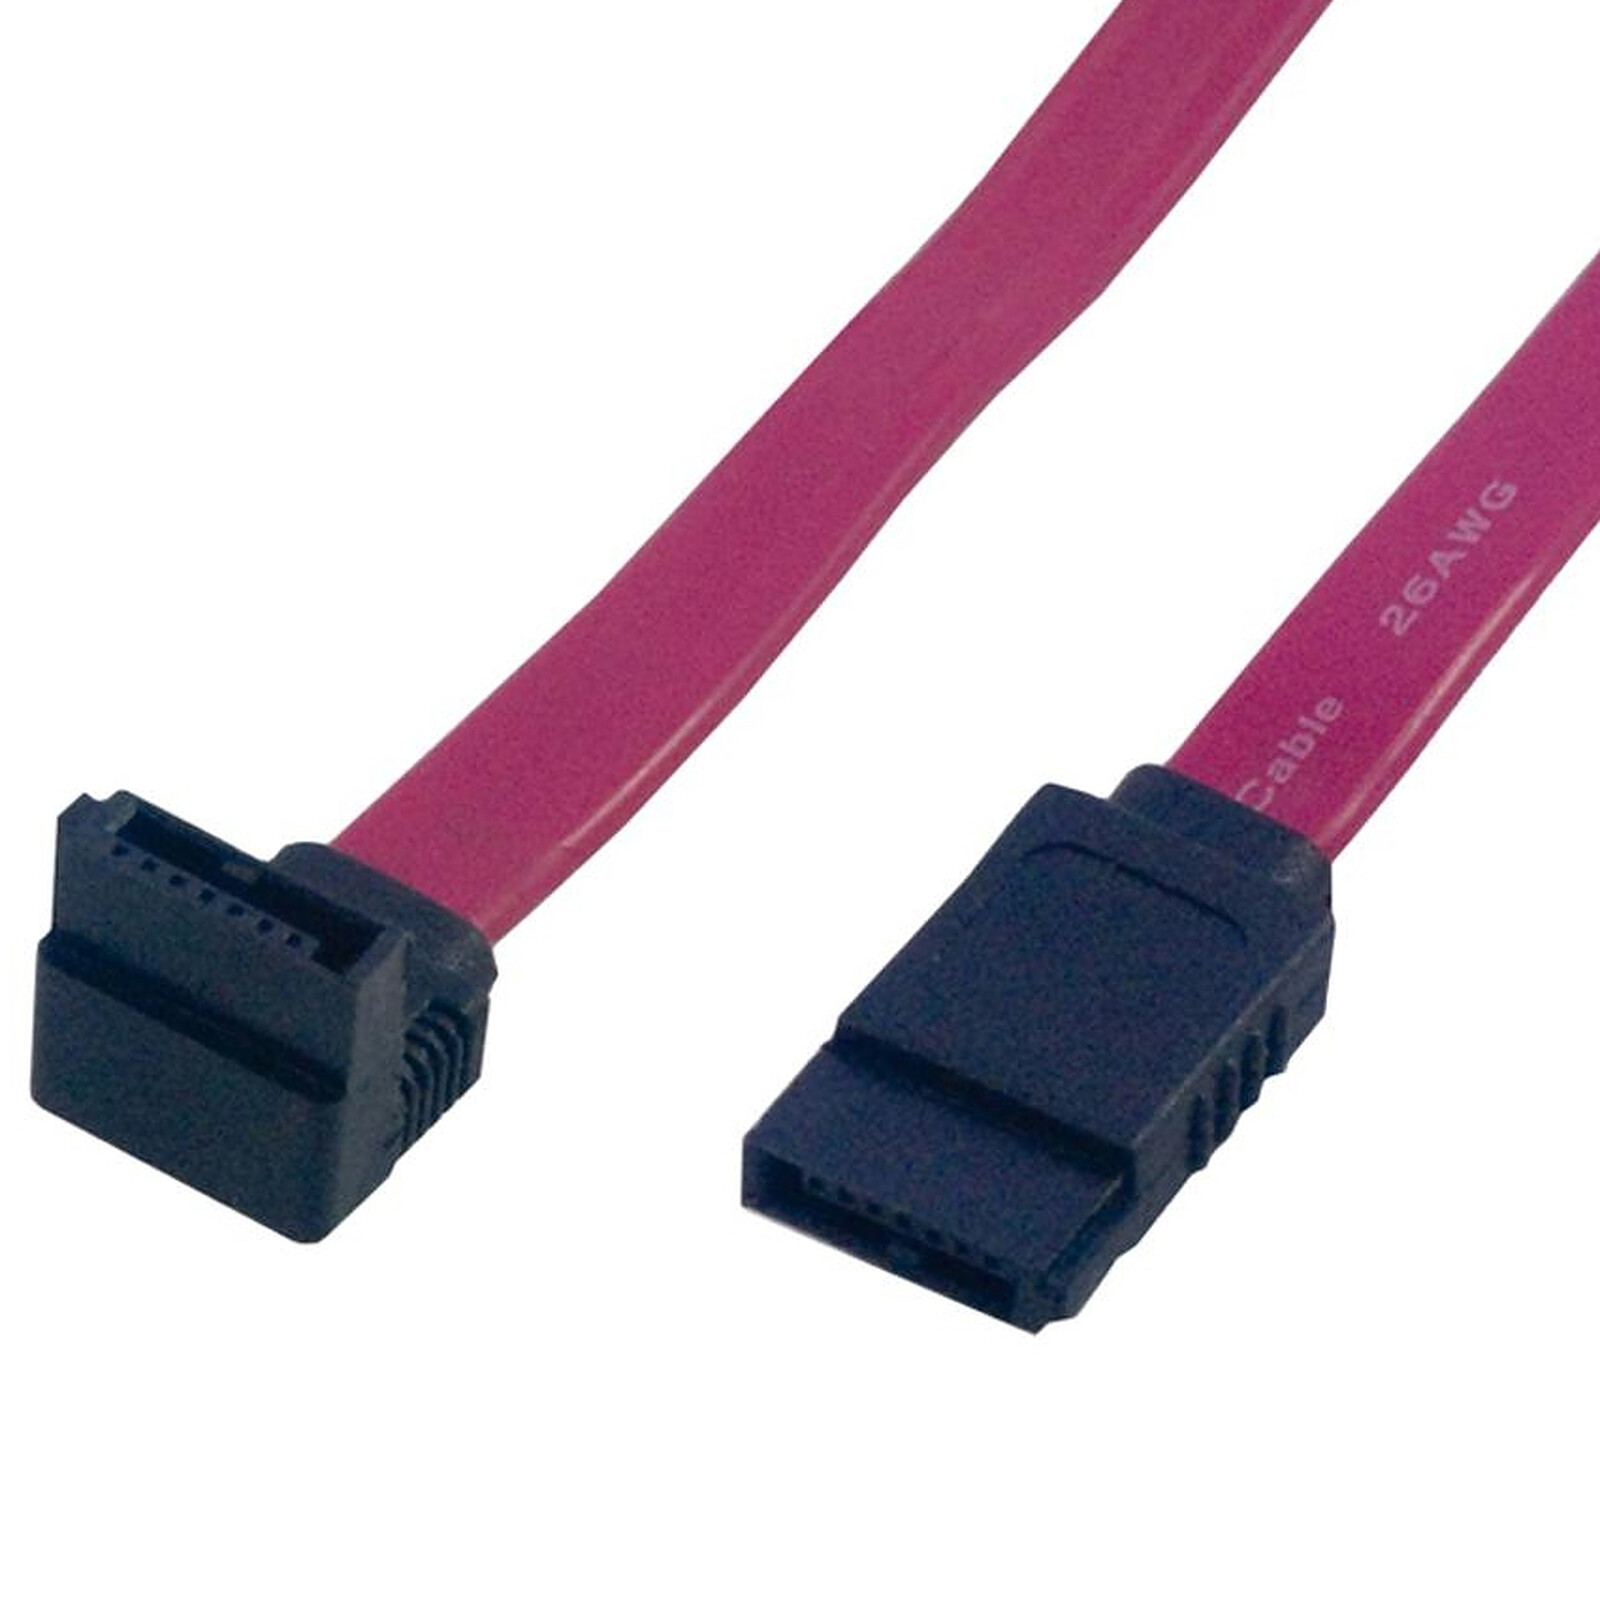 LOTTO 10 X Rosso Cavi dati SATA Serial ATA 23cm 230mm di lunghezza 26AWG-clip in metallo 